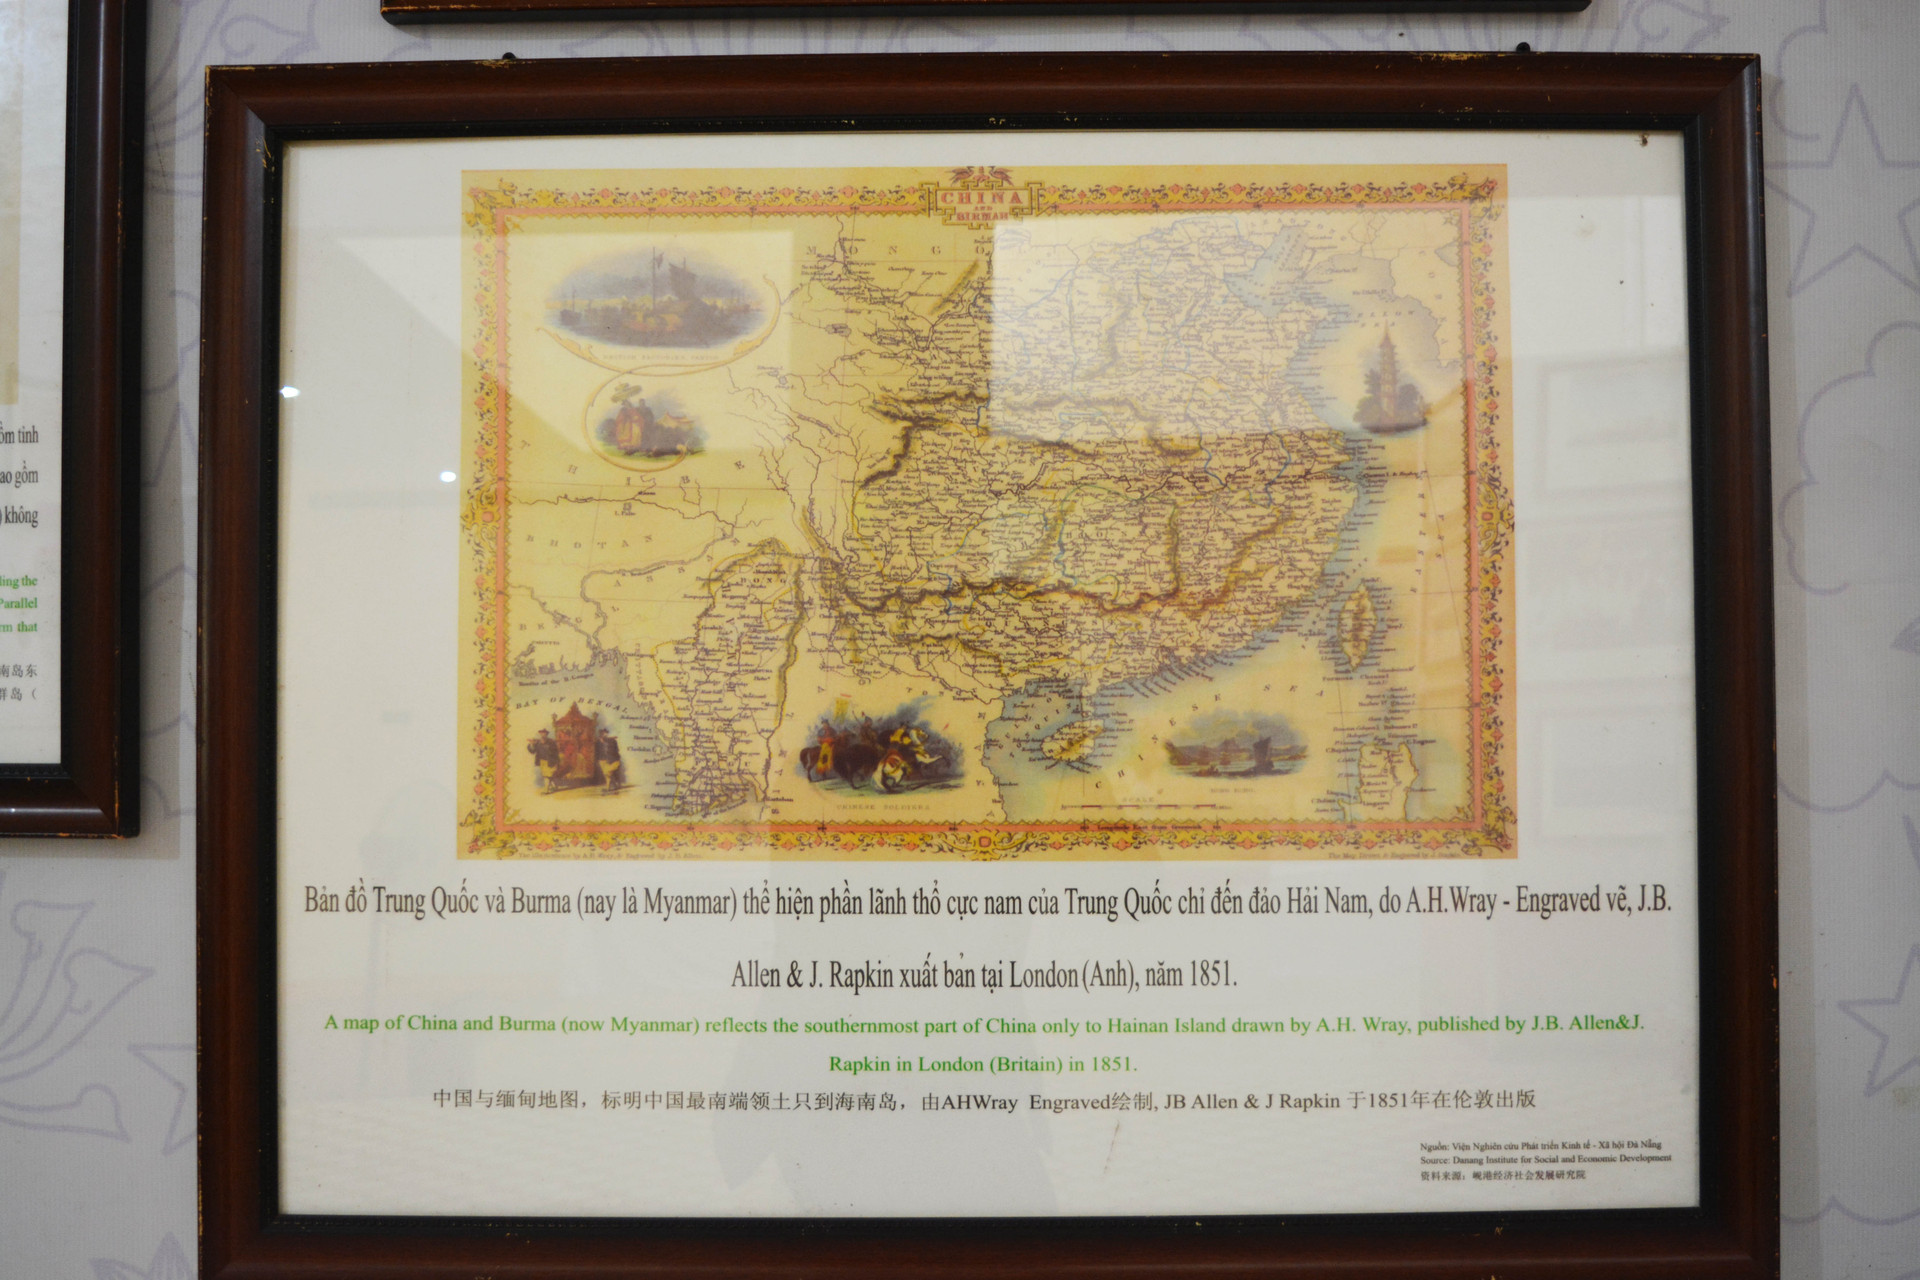 Triển lãm bản đồ và trưng bày tư liệu Hoàng Sa, Trường Sa của Việt Nam 